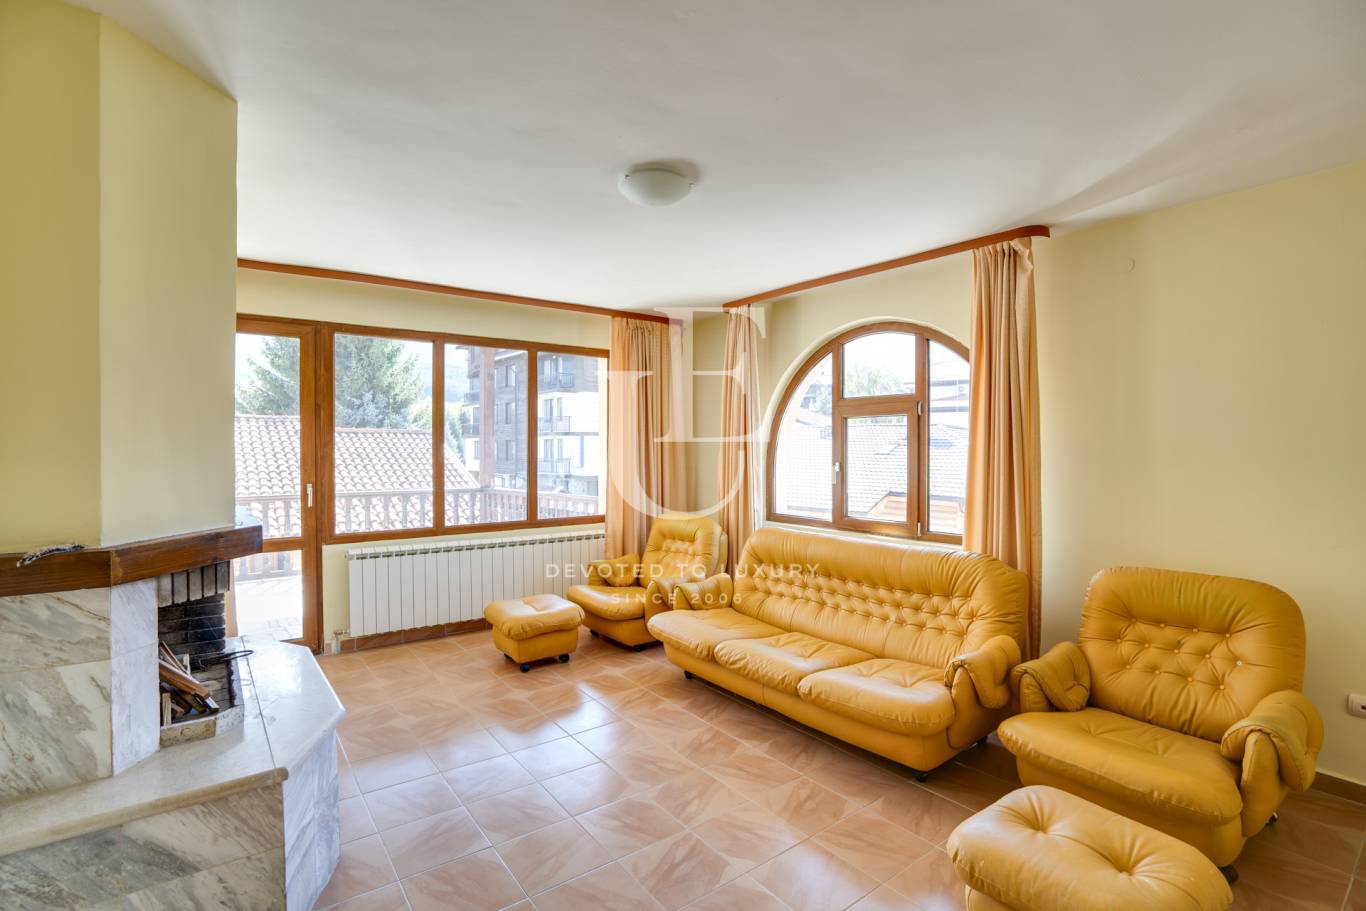 Хотел / Apartment house за продажба в Банско,  - код на имота: K18571 - image 12